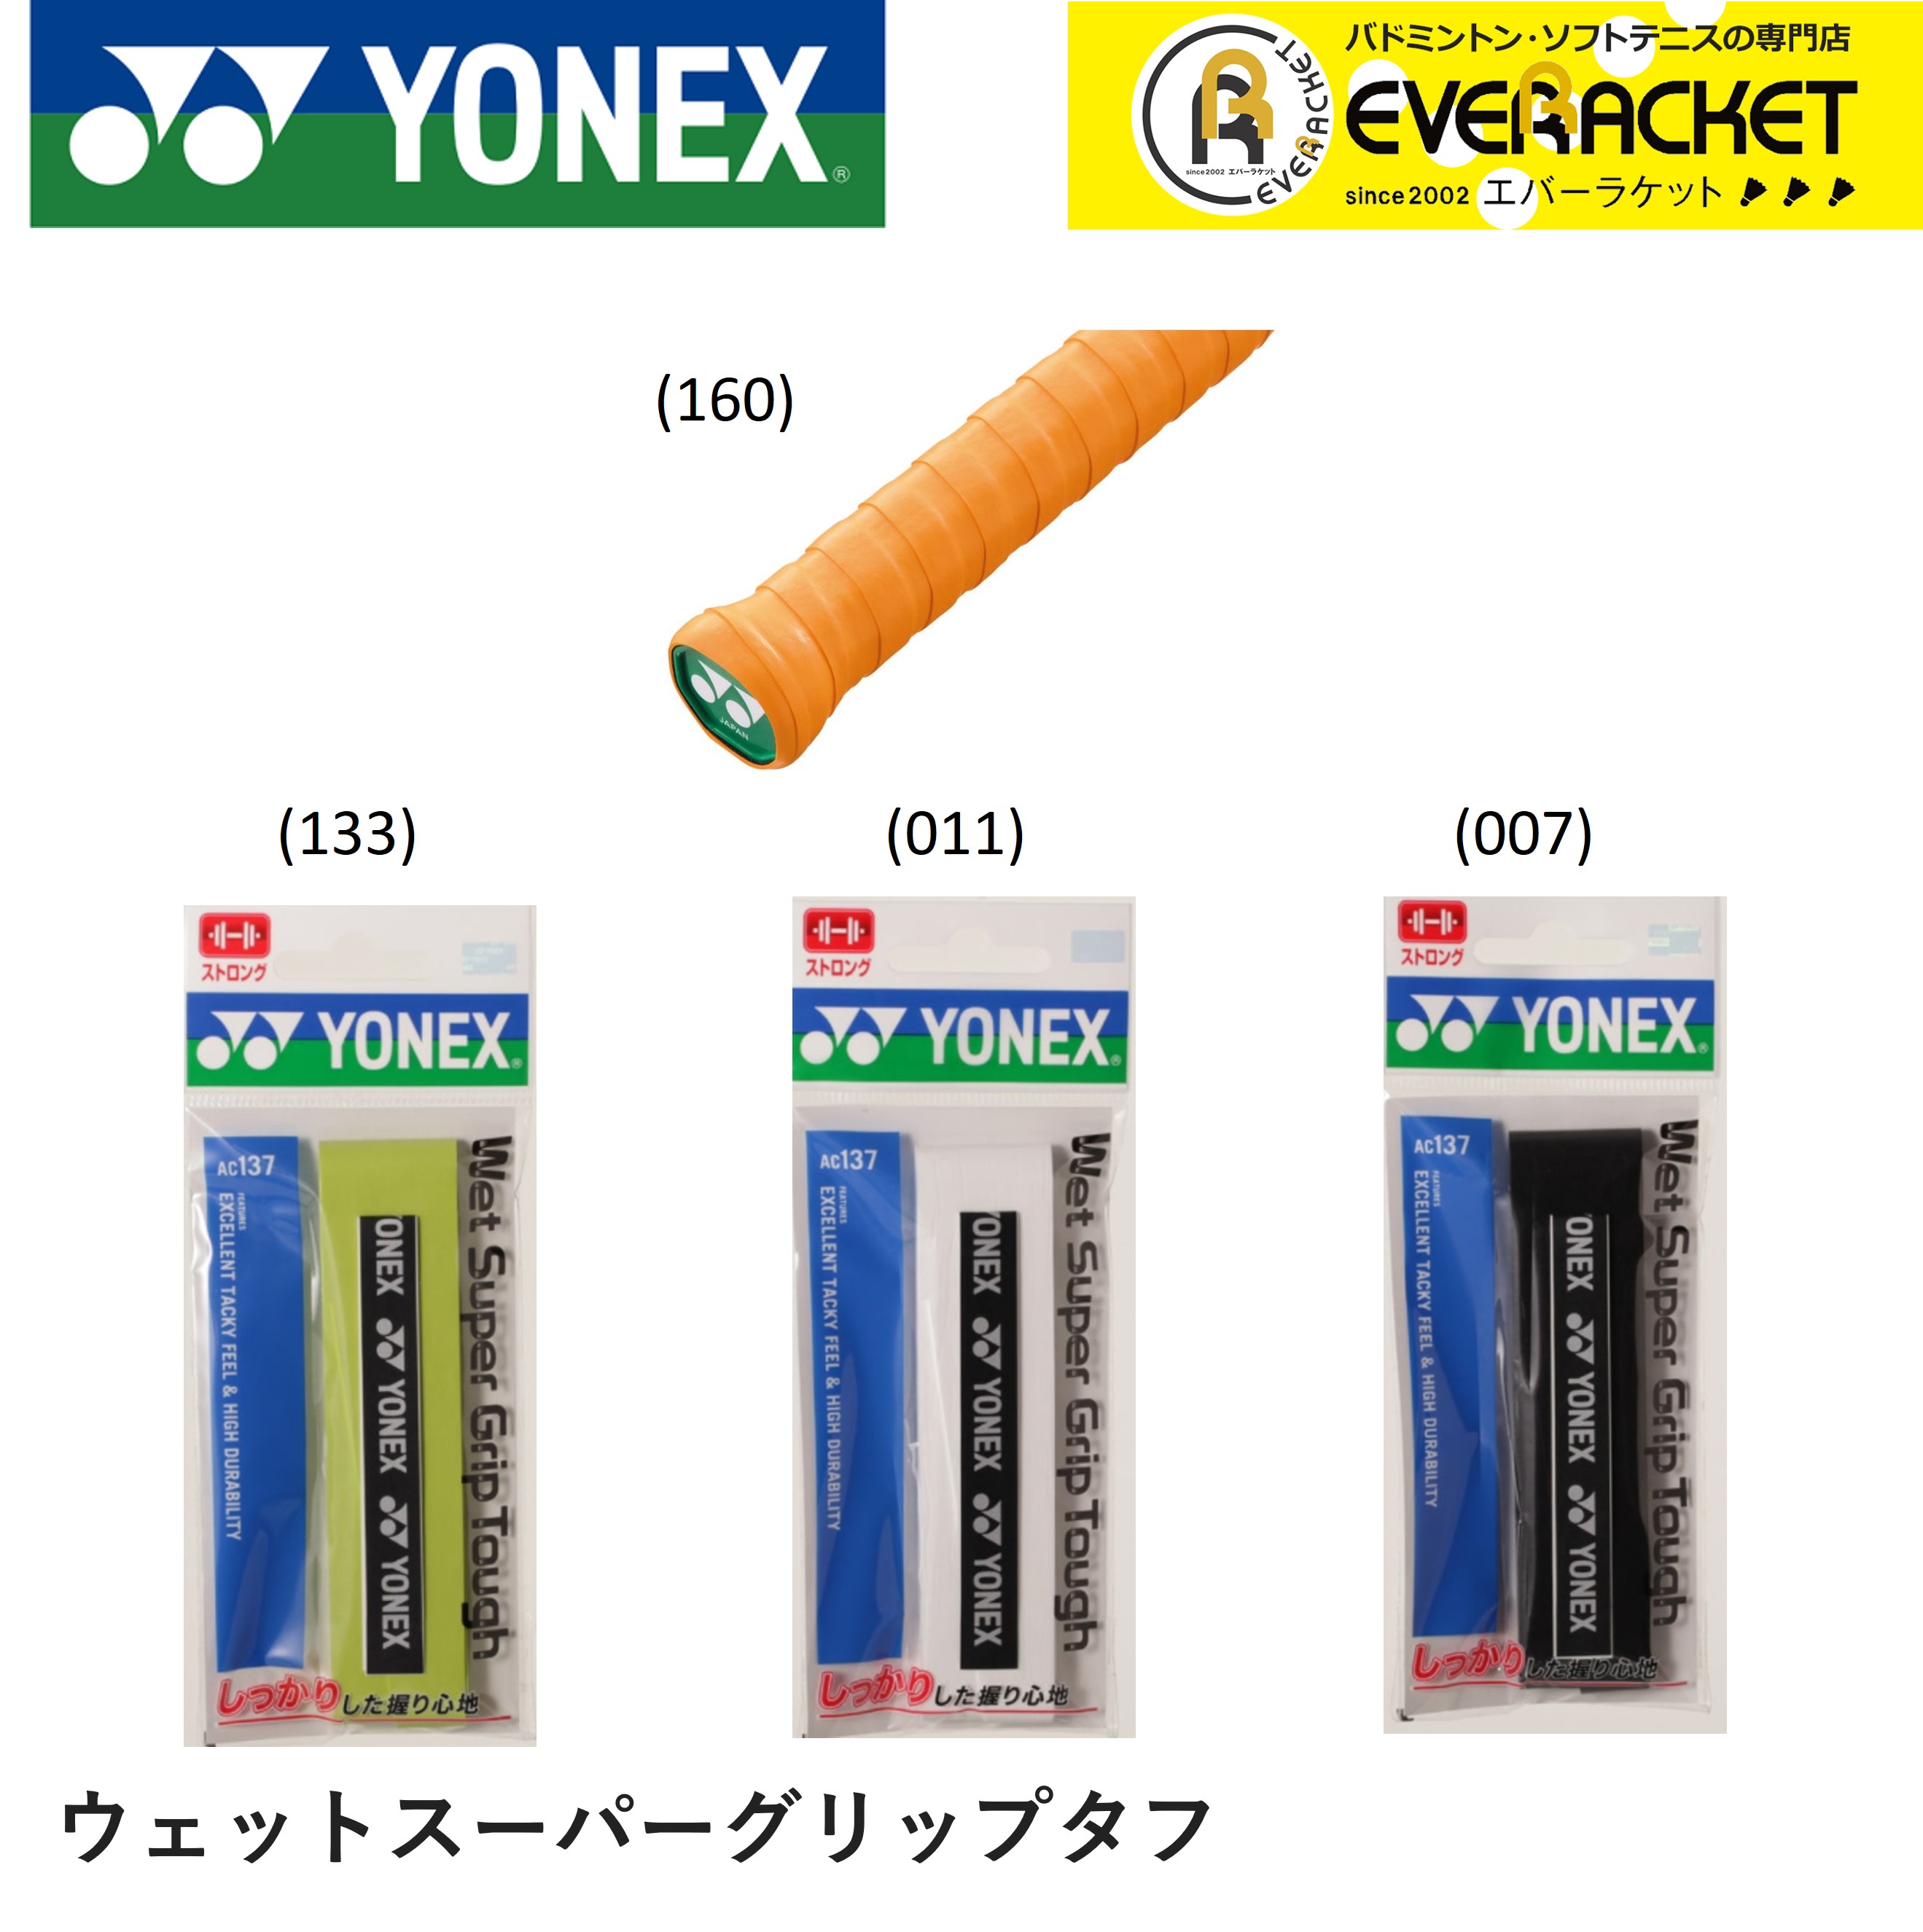 YONEX：ウェットスーパーグリップタフ ヨネックス YONEX アクセサリー 誕生日/お祝い バドミントン ソフトテニス AC137-3 ウェットスーパーグリップタフ 35％OFF